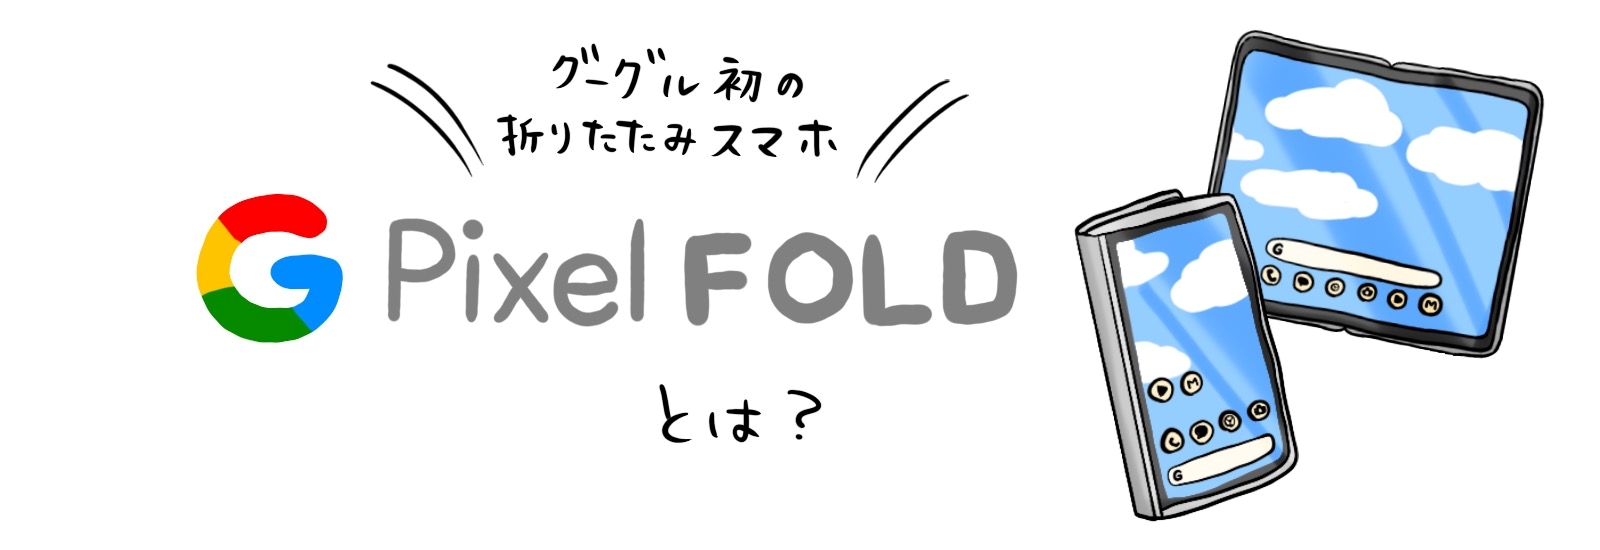 Google初の折りたたみスマホPixel Foldとは？